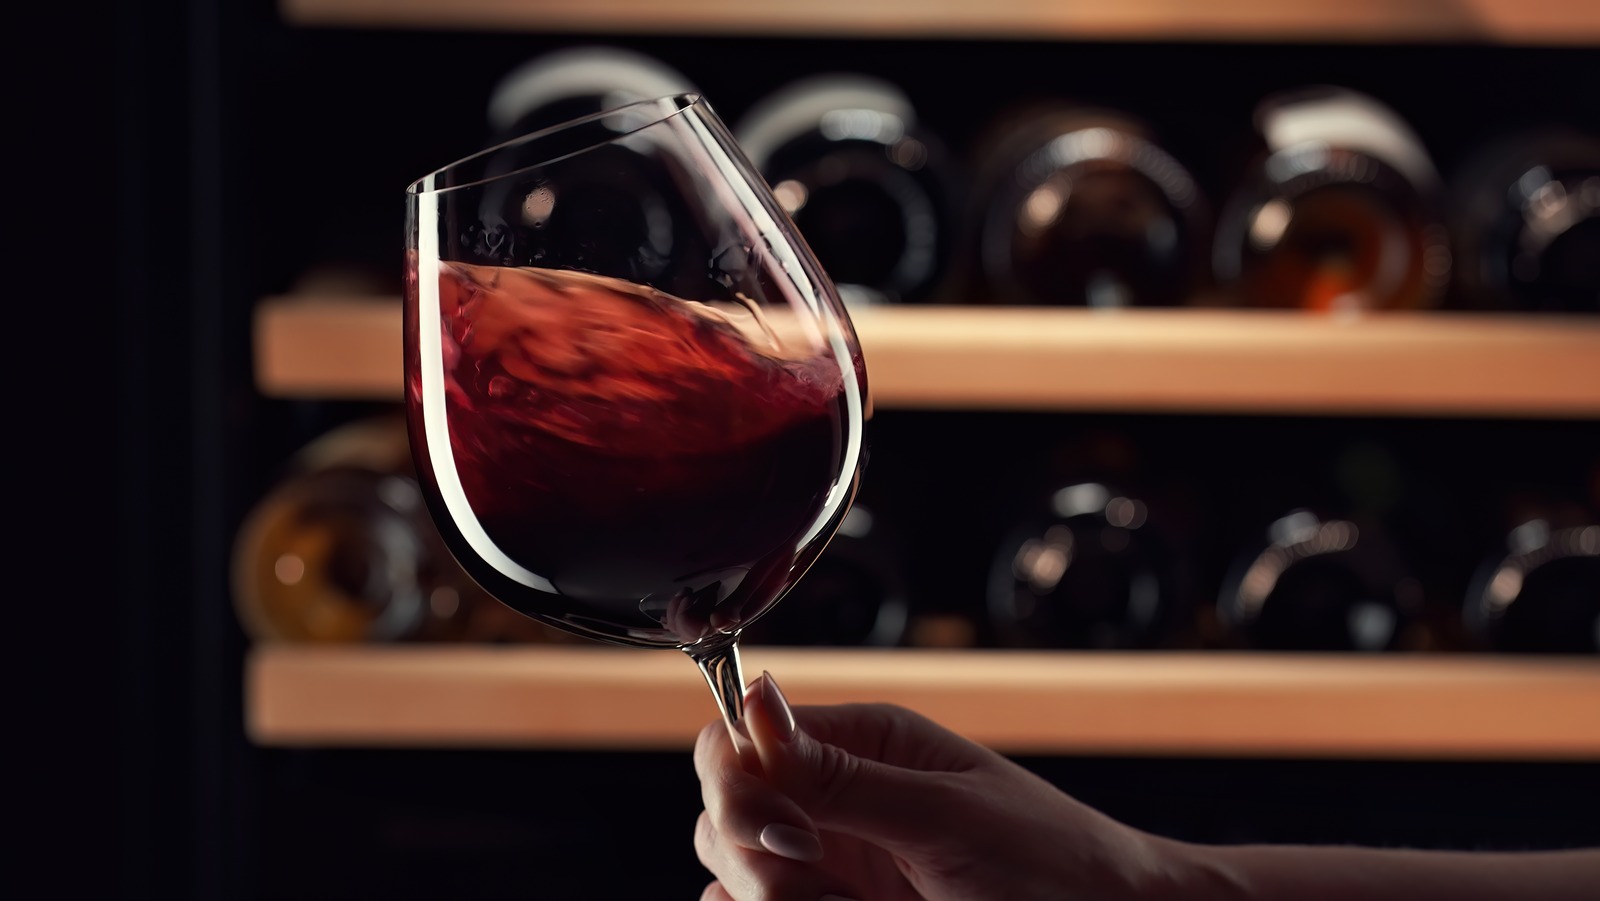 مجموعات النبيذ الفاخرة من كوستكو باهظة الثمن بشكل لا يصدق